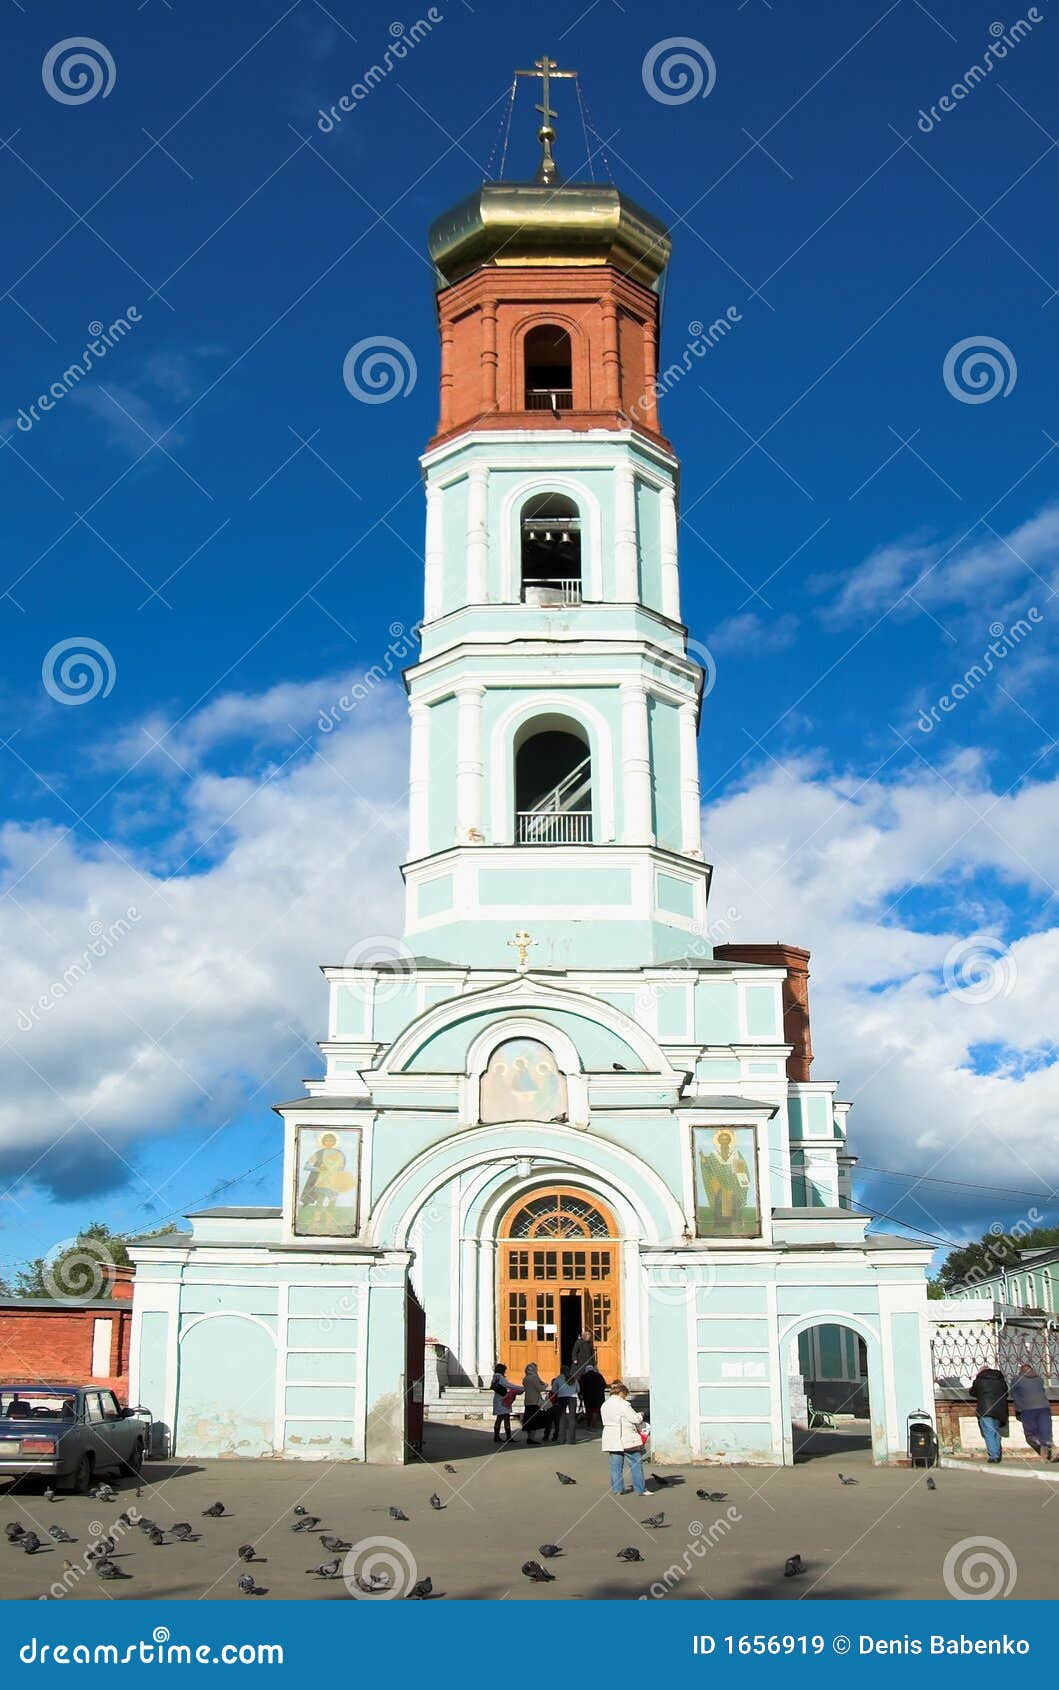 christian church in perm